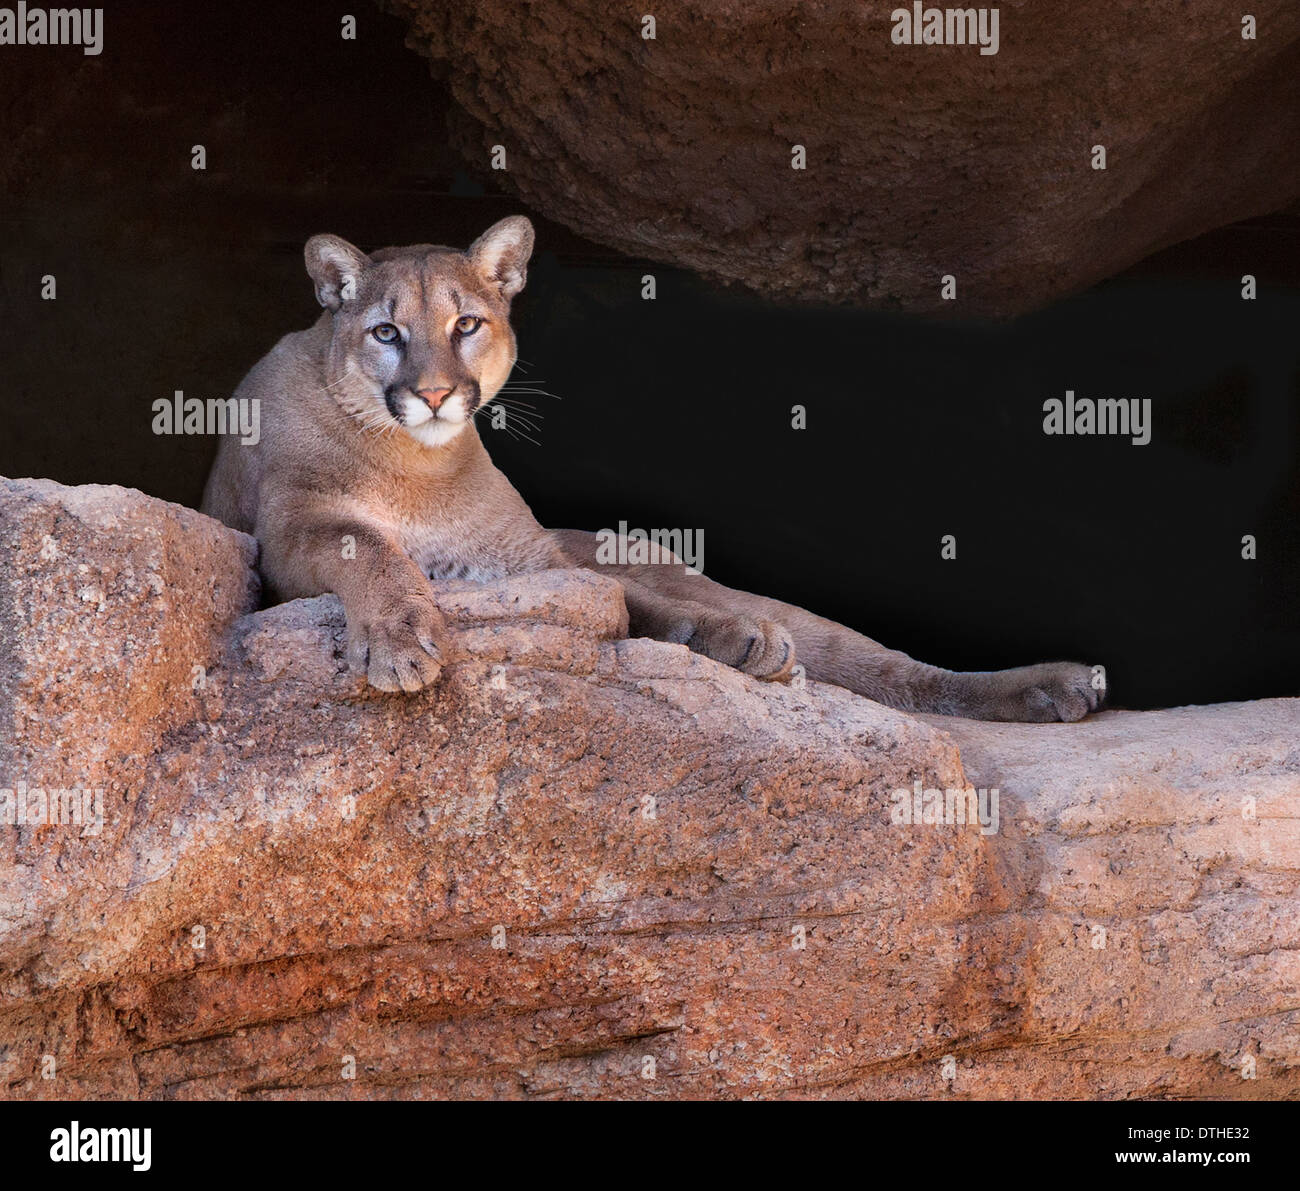 Un puma, o león de montaña, observa desde una perca rocosa. Tomado en un santuario de vida silvestre en Tucson, Arizona llamado Arizona - Sonora Desert Museum Foto de stock